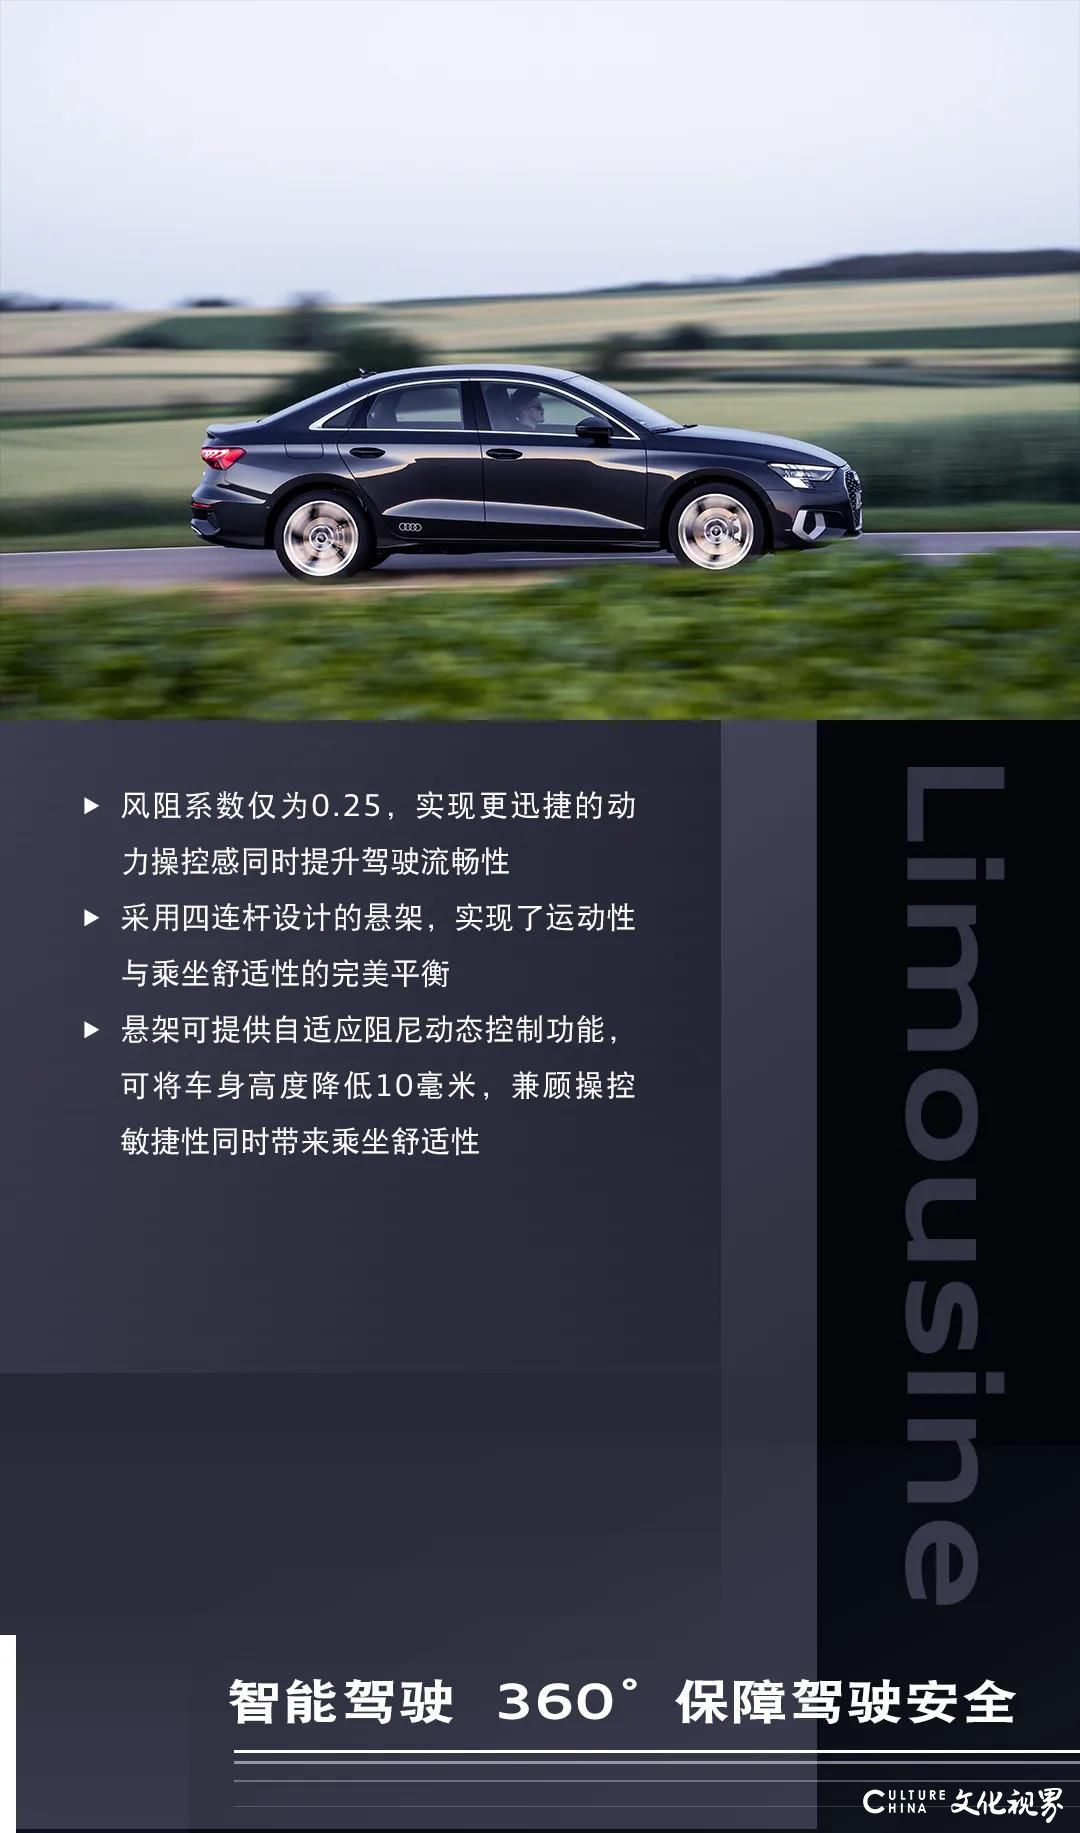 全新设计  硬核动能 智能驾驶 尖端科技——全新奥迪A3 Limousine全球首发